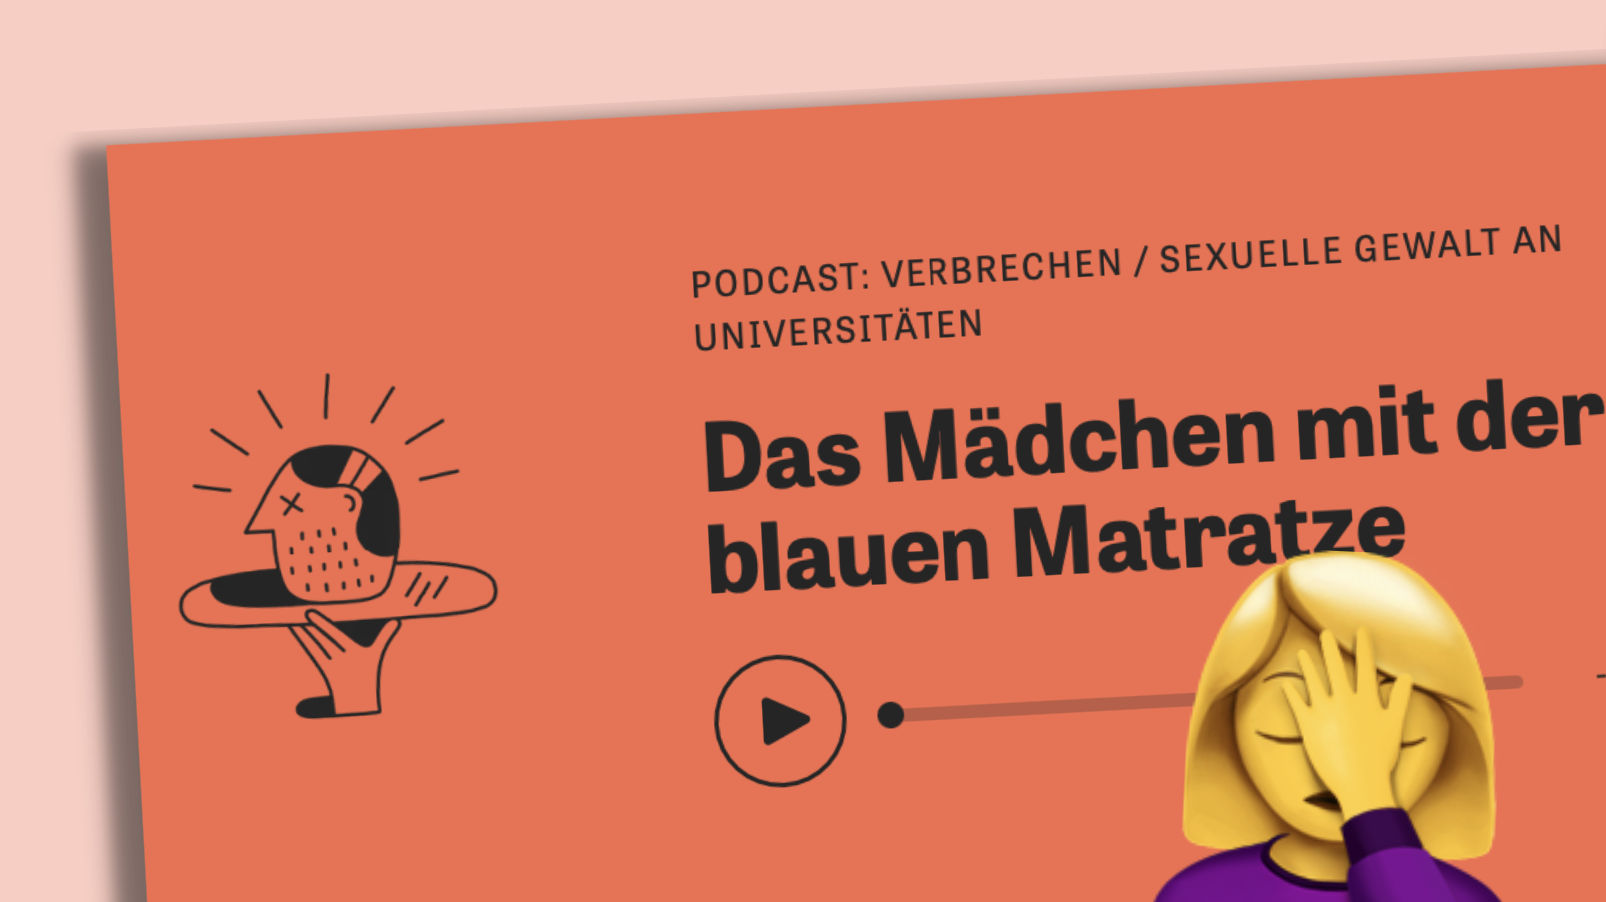 Podcast "Zeit Verbrechen", Emoji mit Hand vor dem Kopf